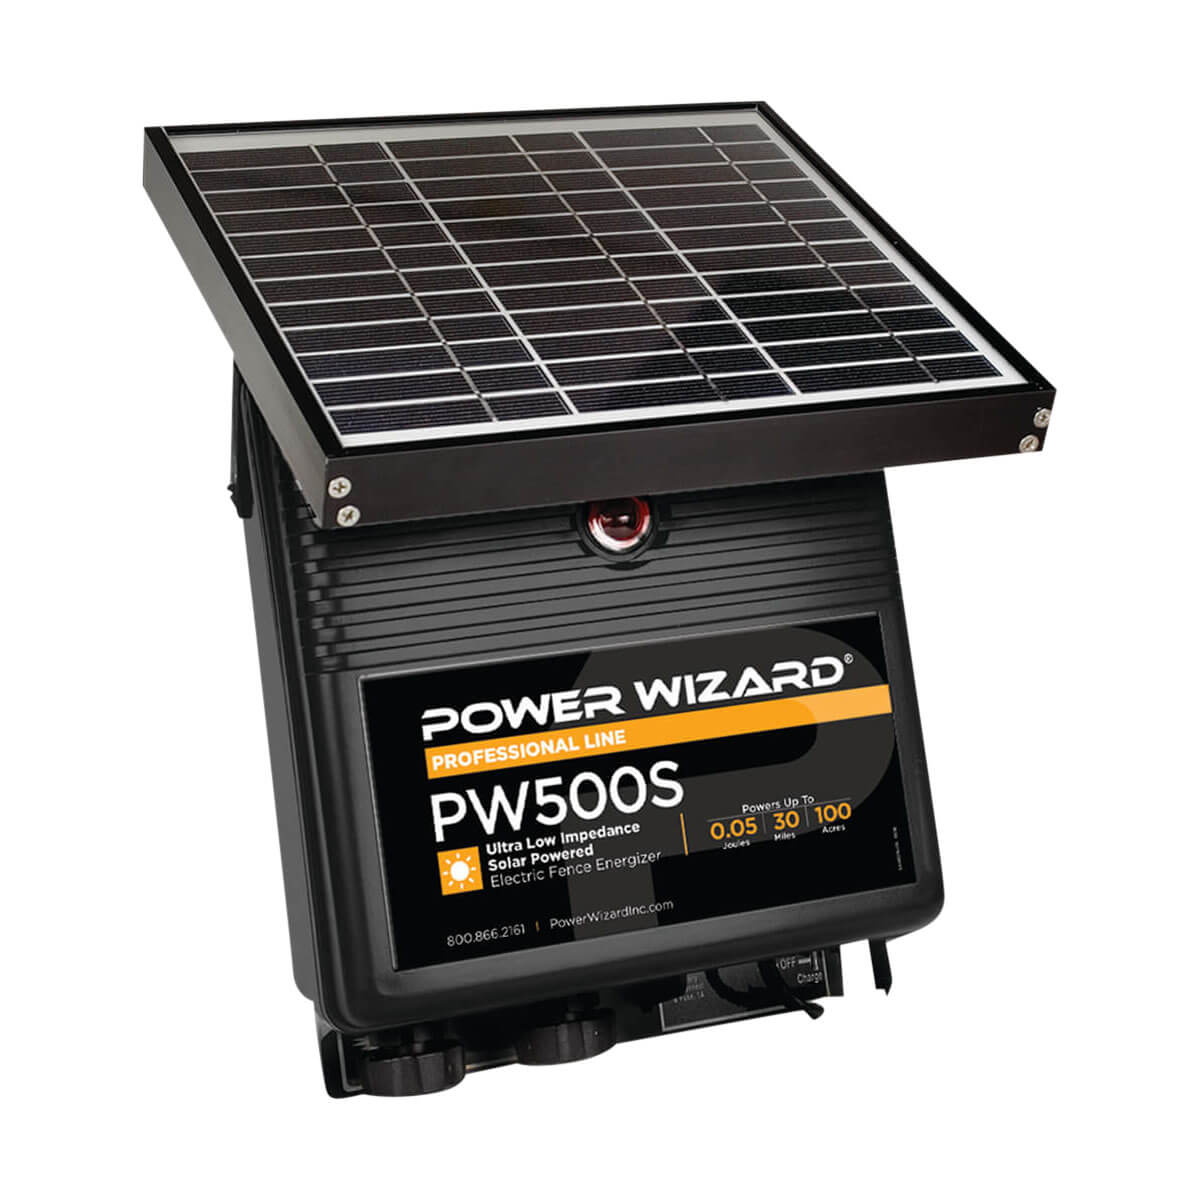 Power Wizard PW500S Solar Fence Energizer